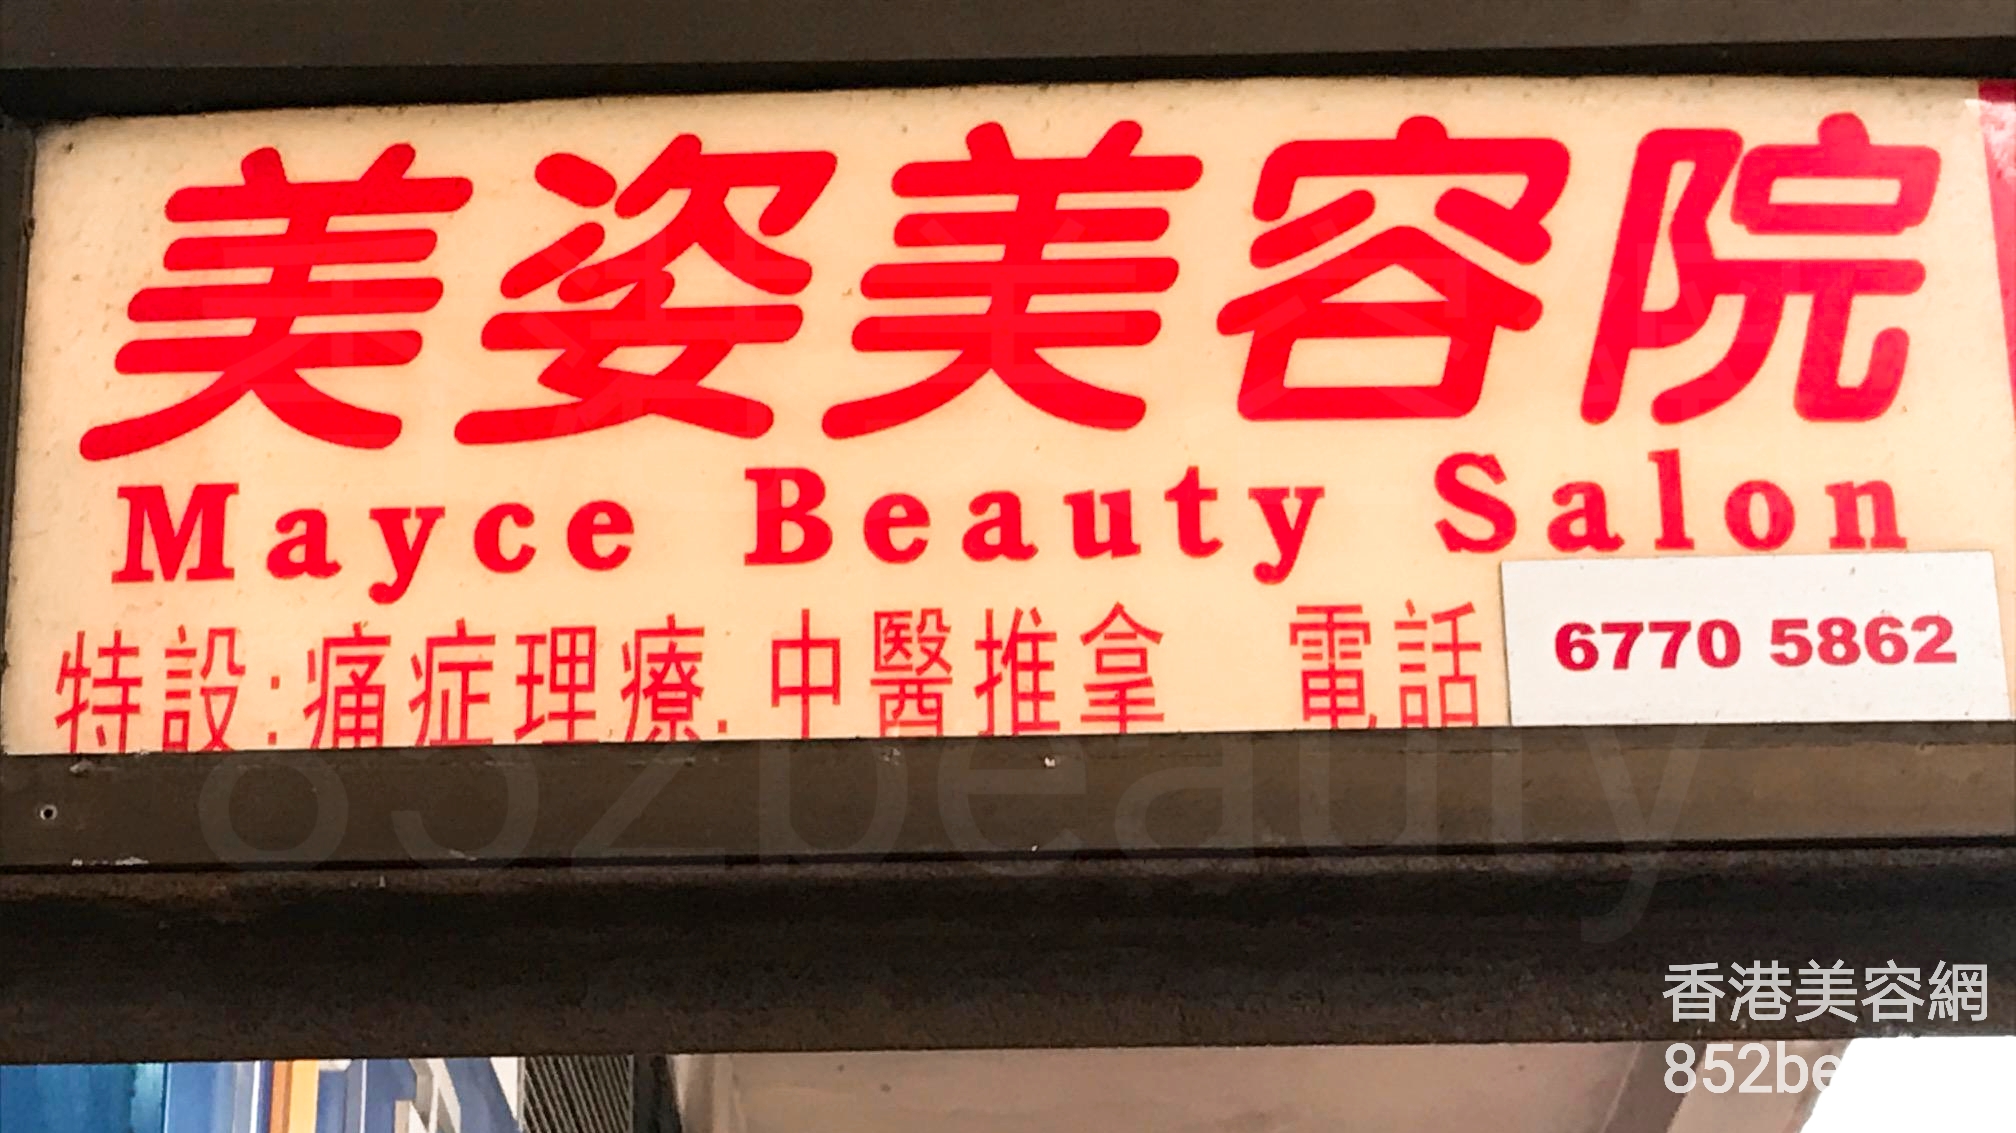 香港美容網 Hong Kong Beauty Salon 美容院 / 美容師: 美姿美容院